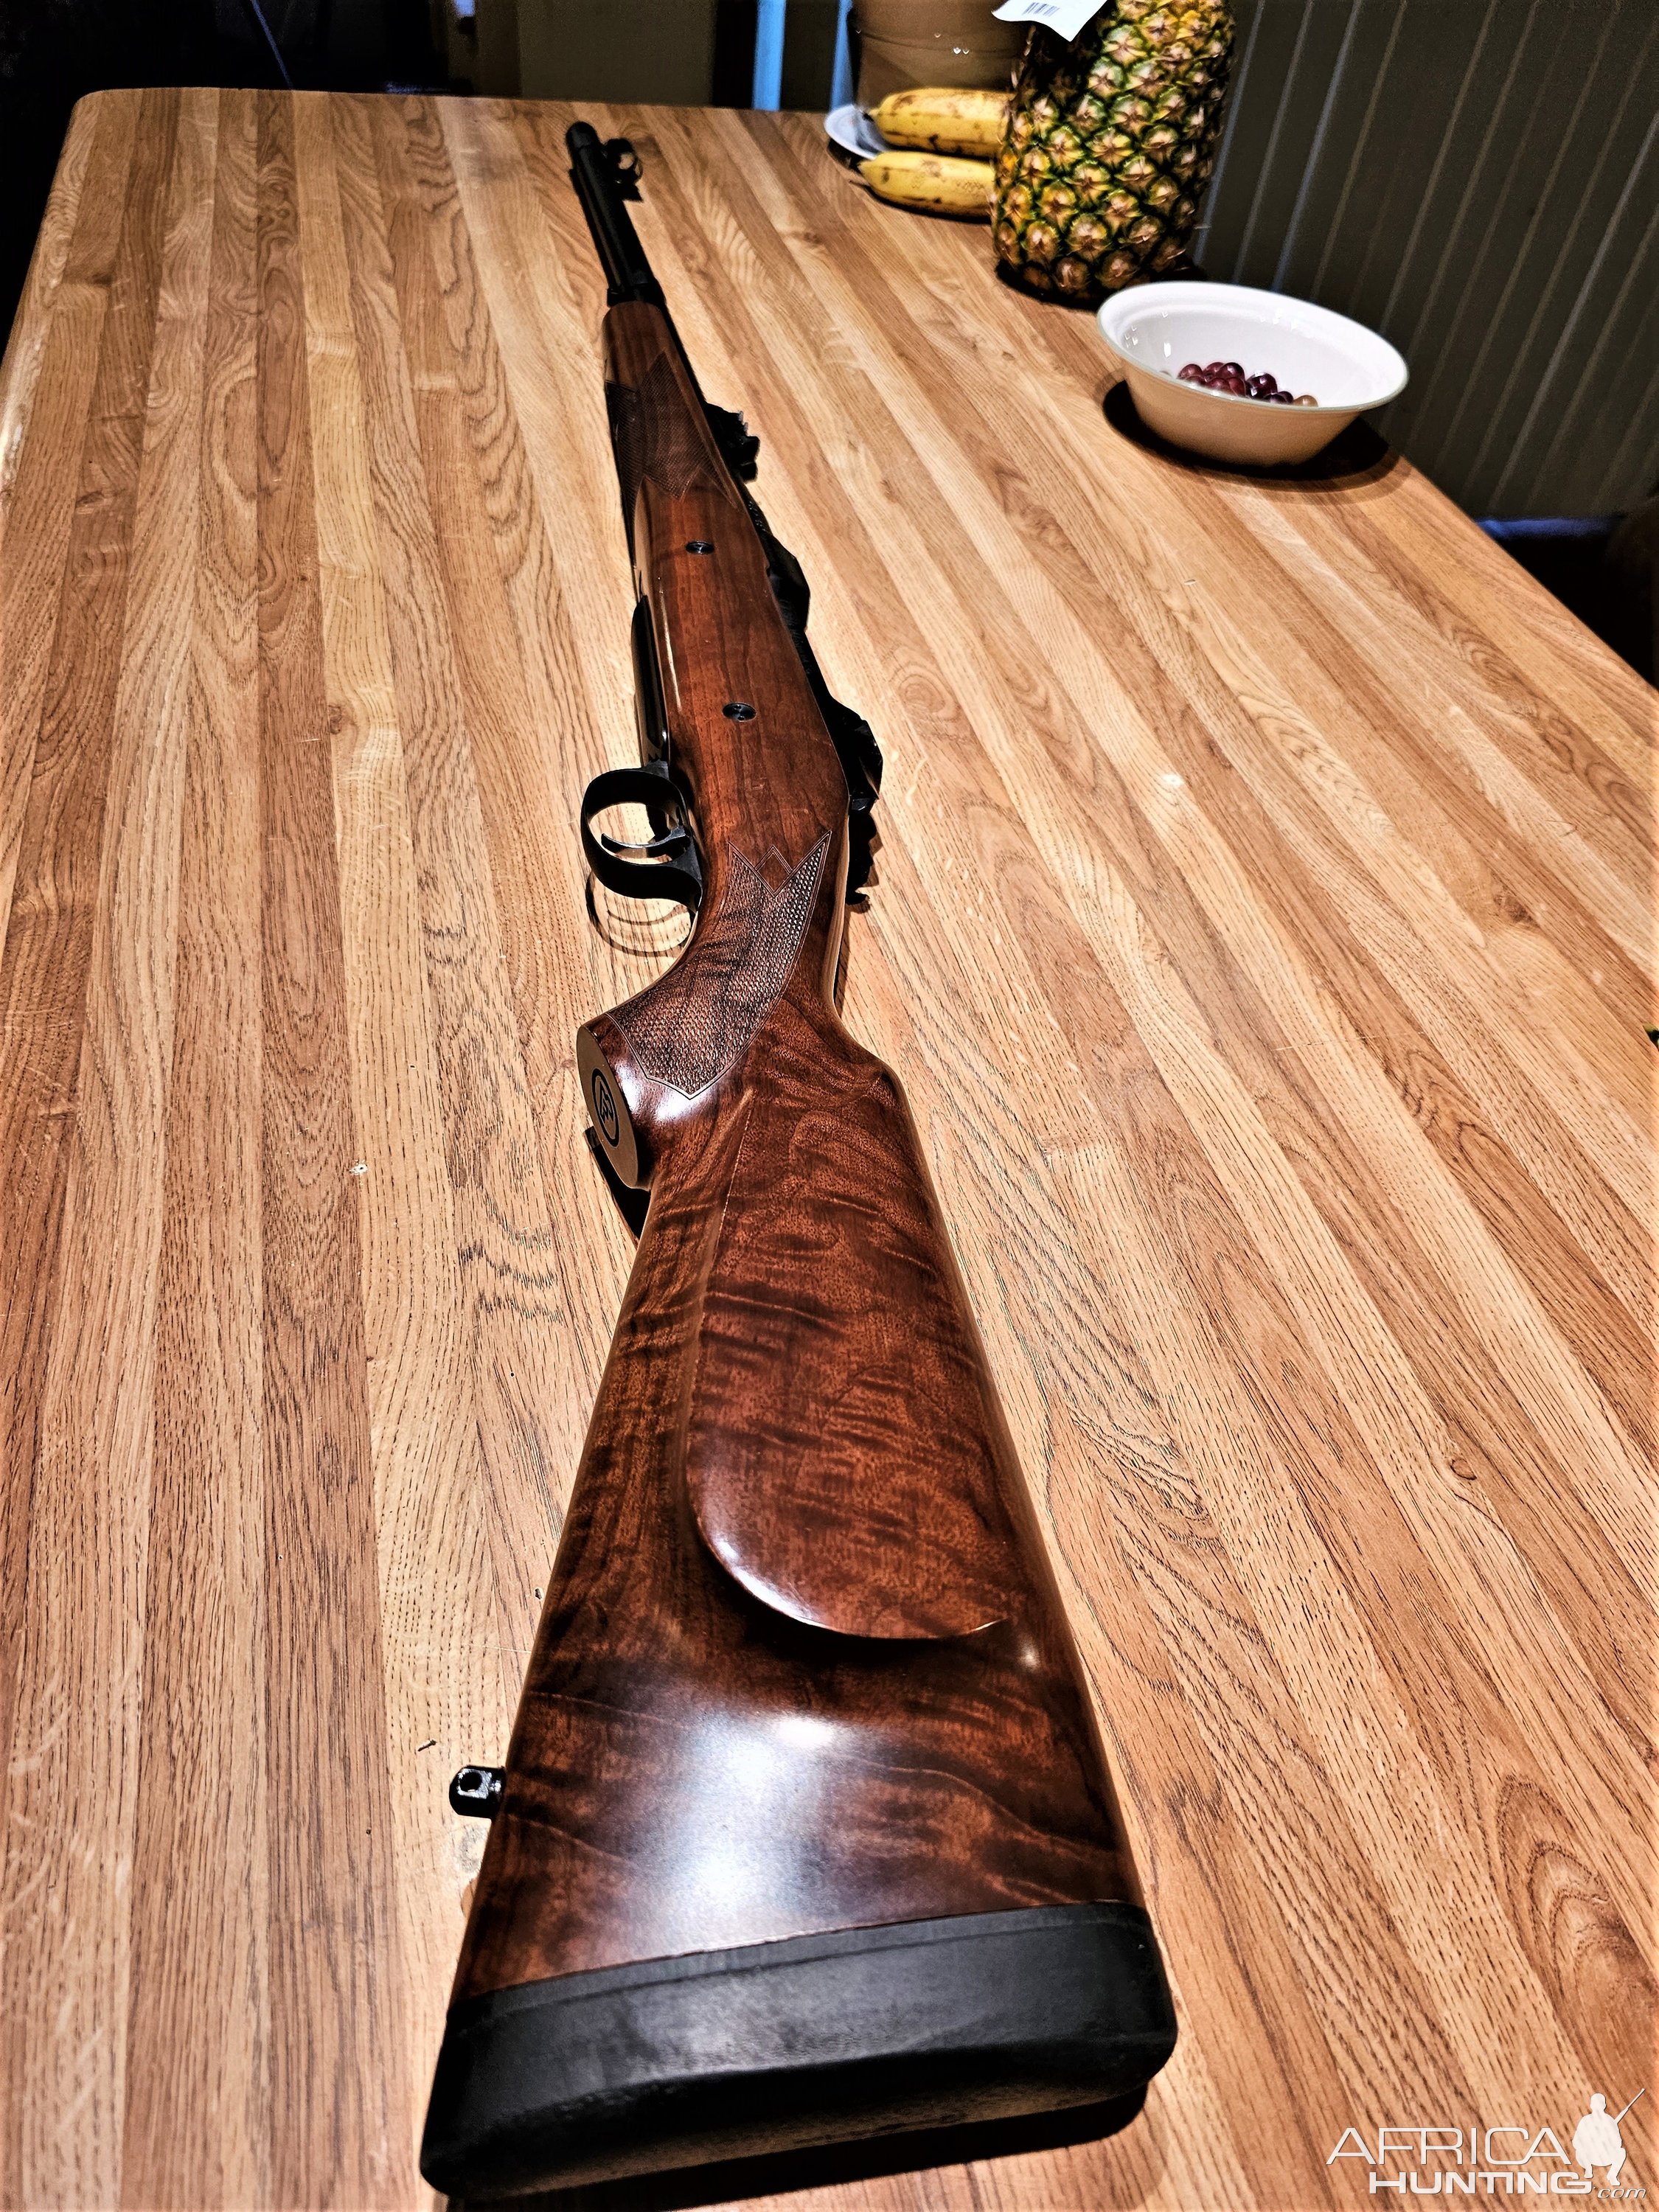 CZ 550 Safari Magnum In 450 Rigby Rifle